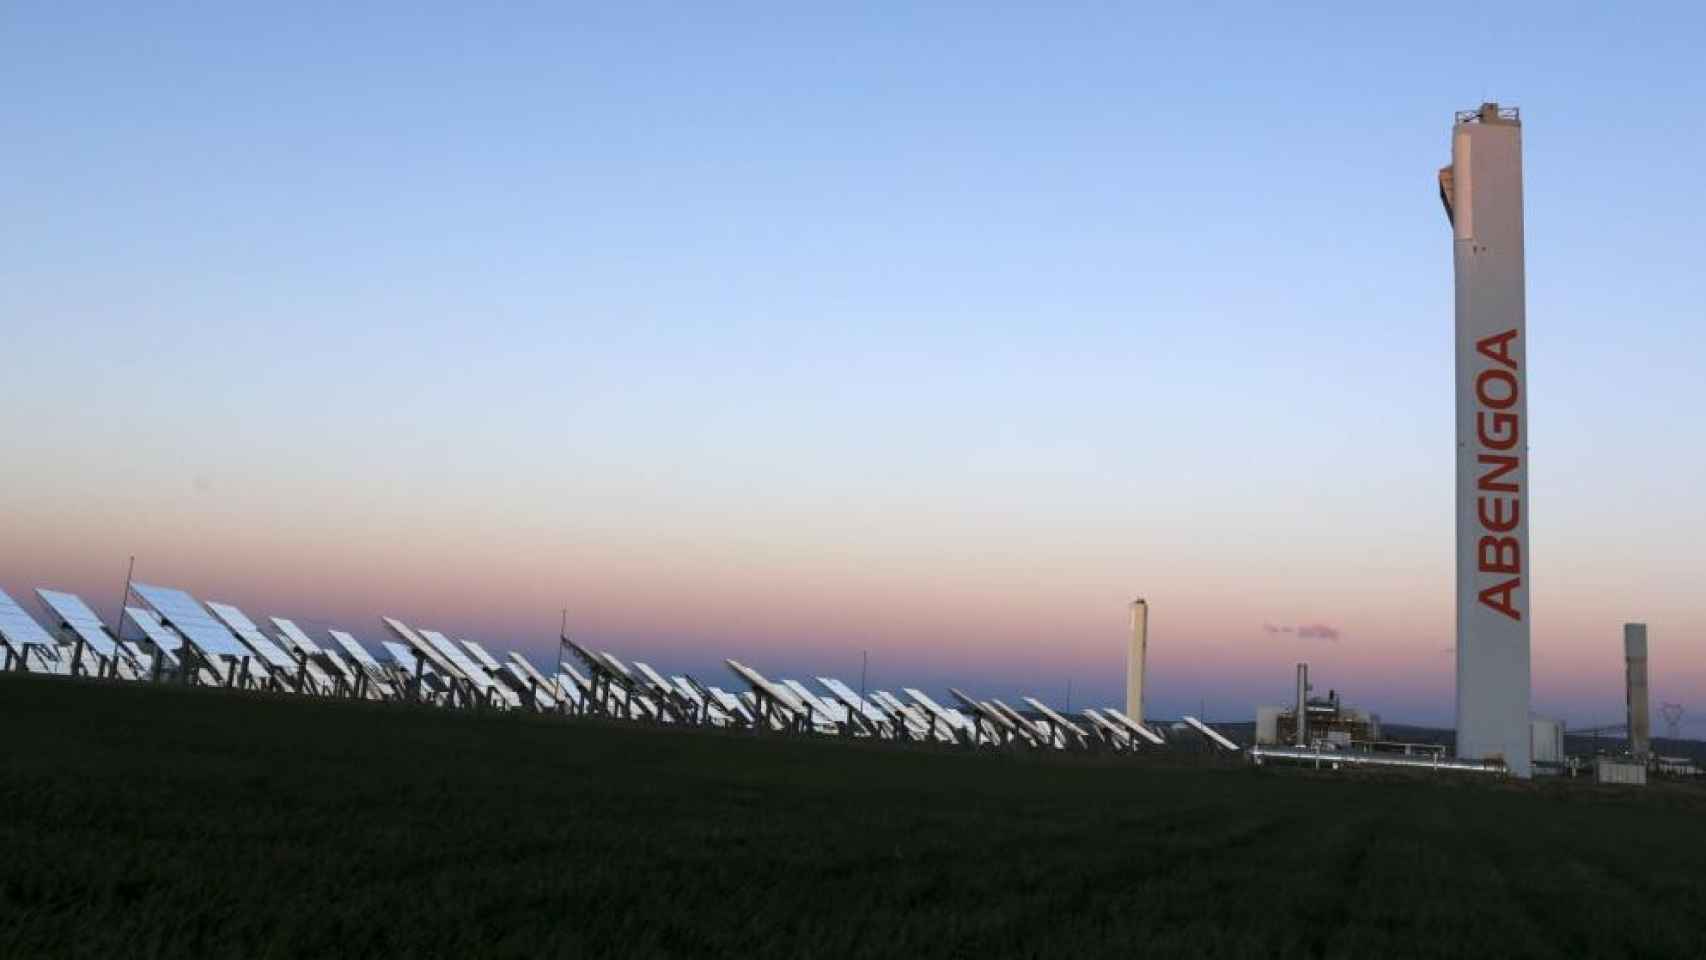 Una planta fotovoltaica de Abengoa, en una imagen de archivo / EFE